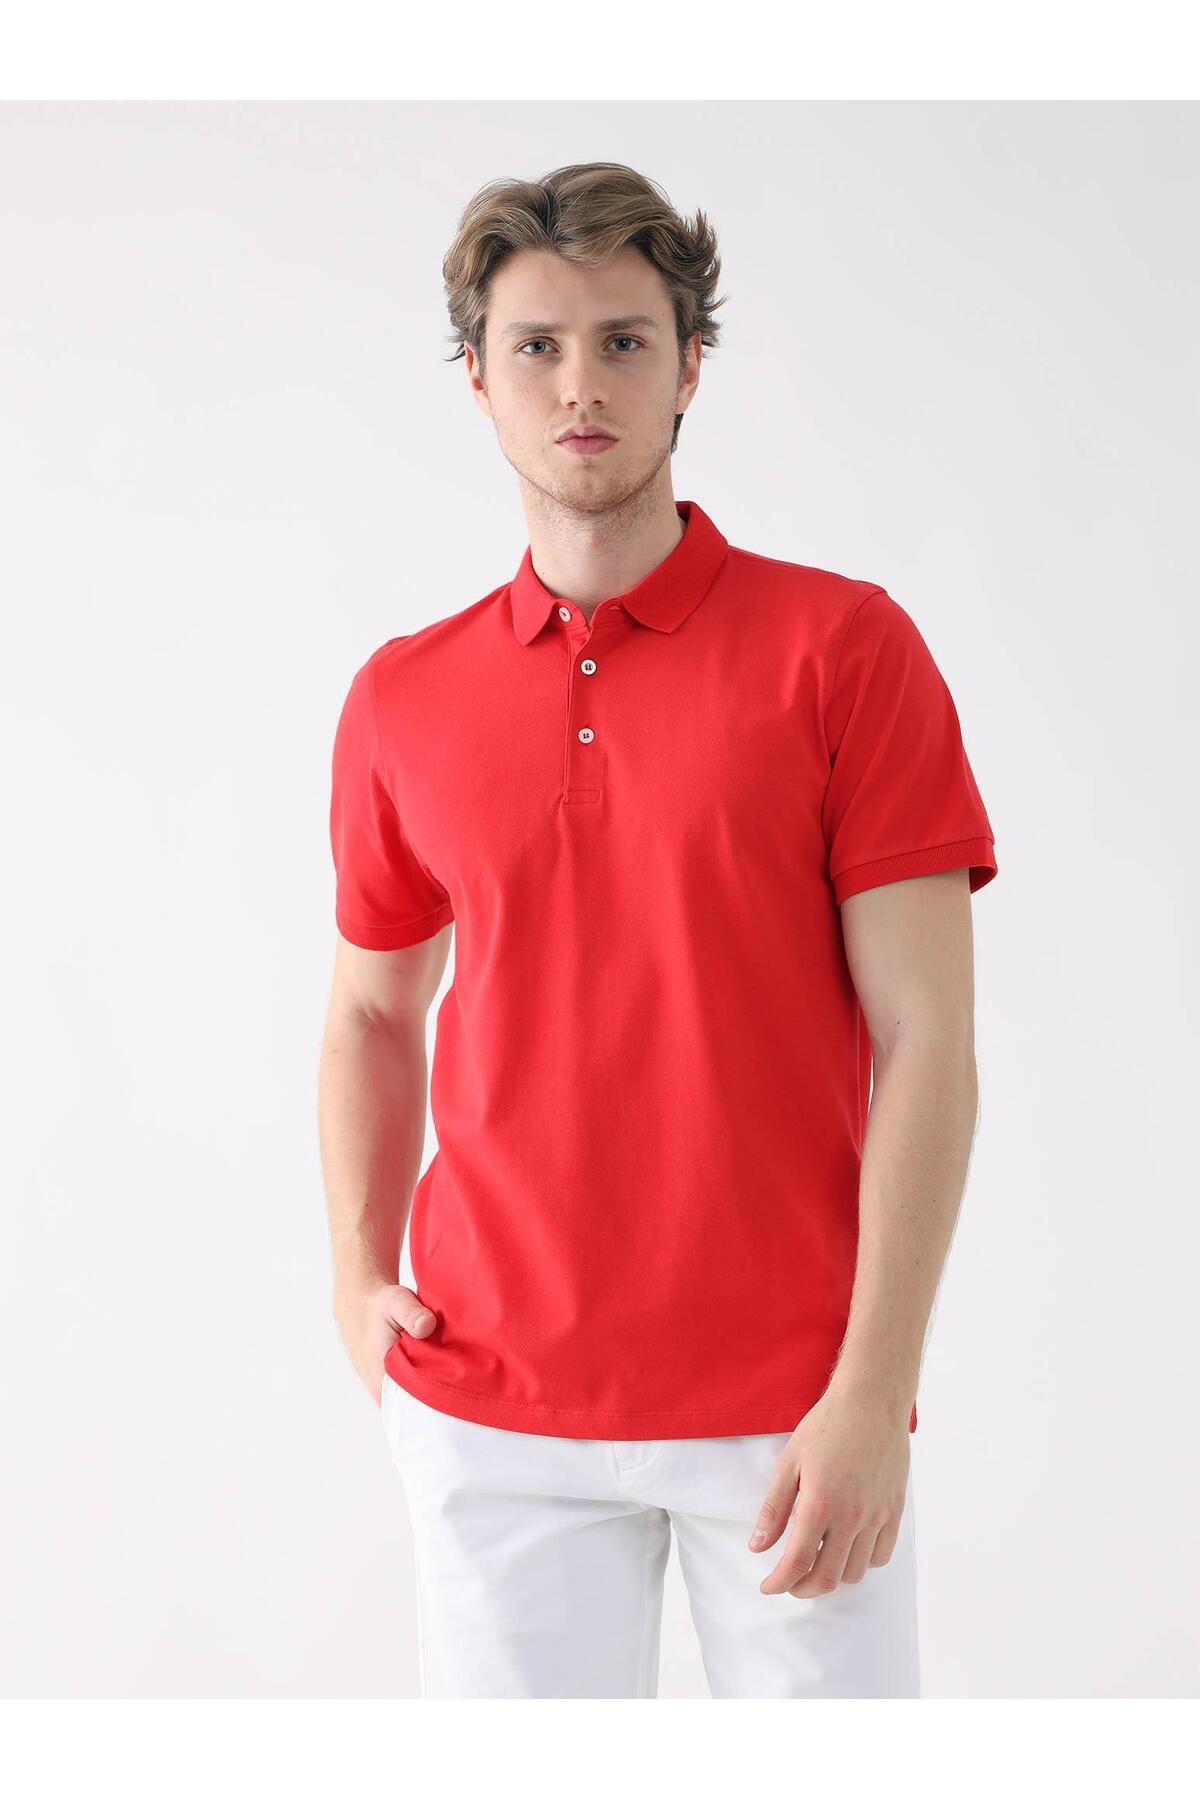 Dufy Kırmızı Erkek Slim Fit Düz Polo Yaka Tshirt - 85418